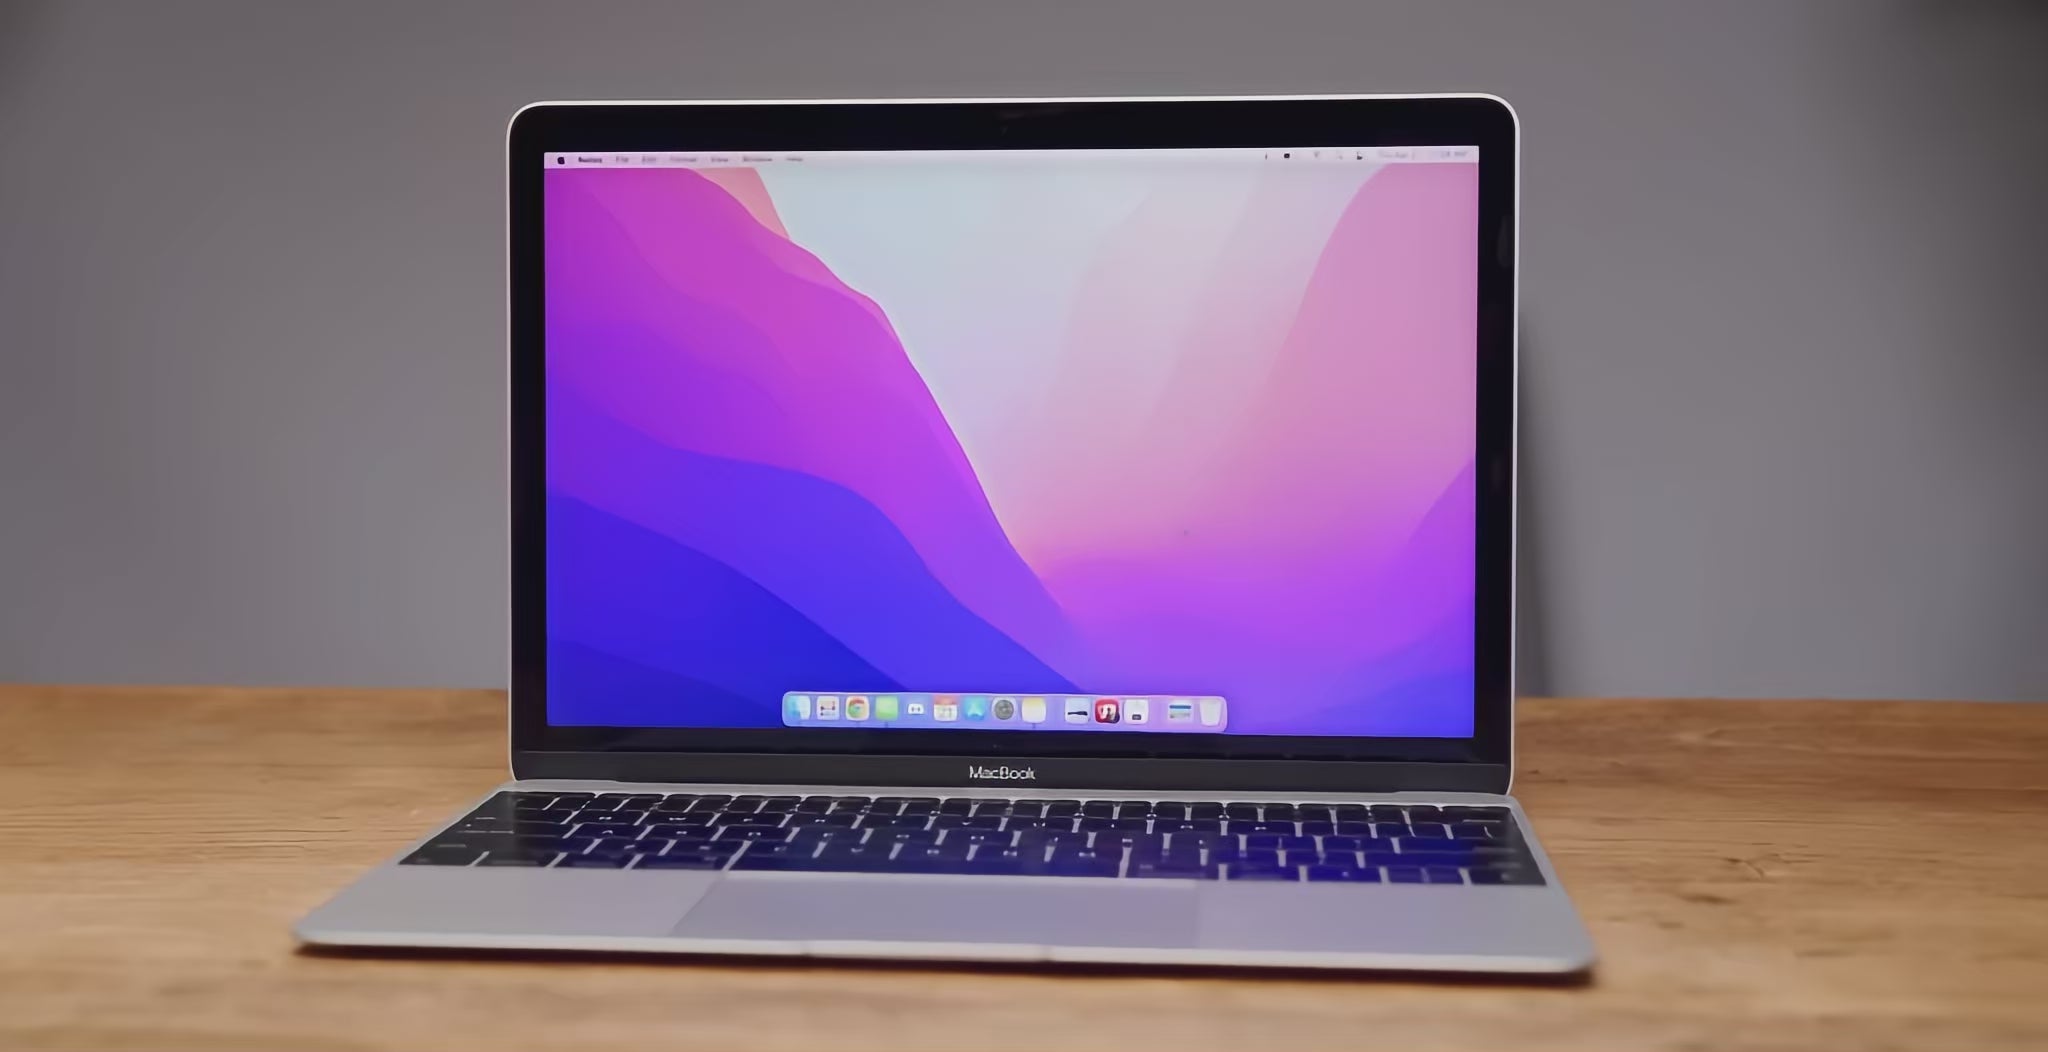 Macbook 12-inch A1534 Core M3 1.1Ghz (2017)